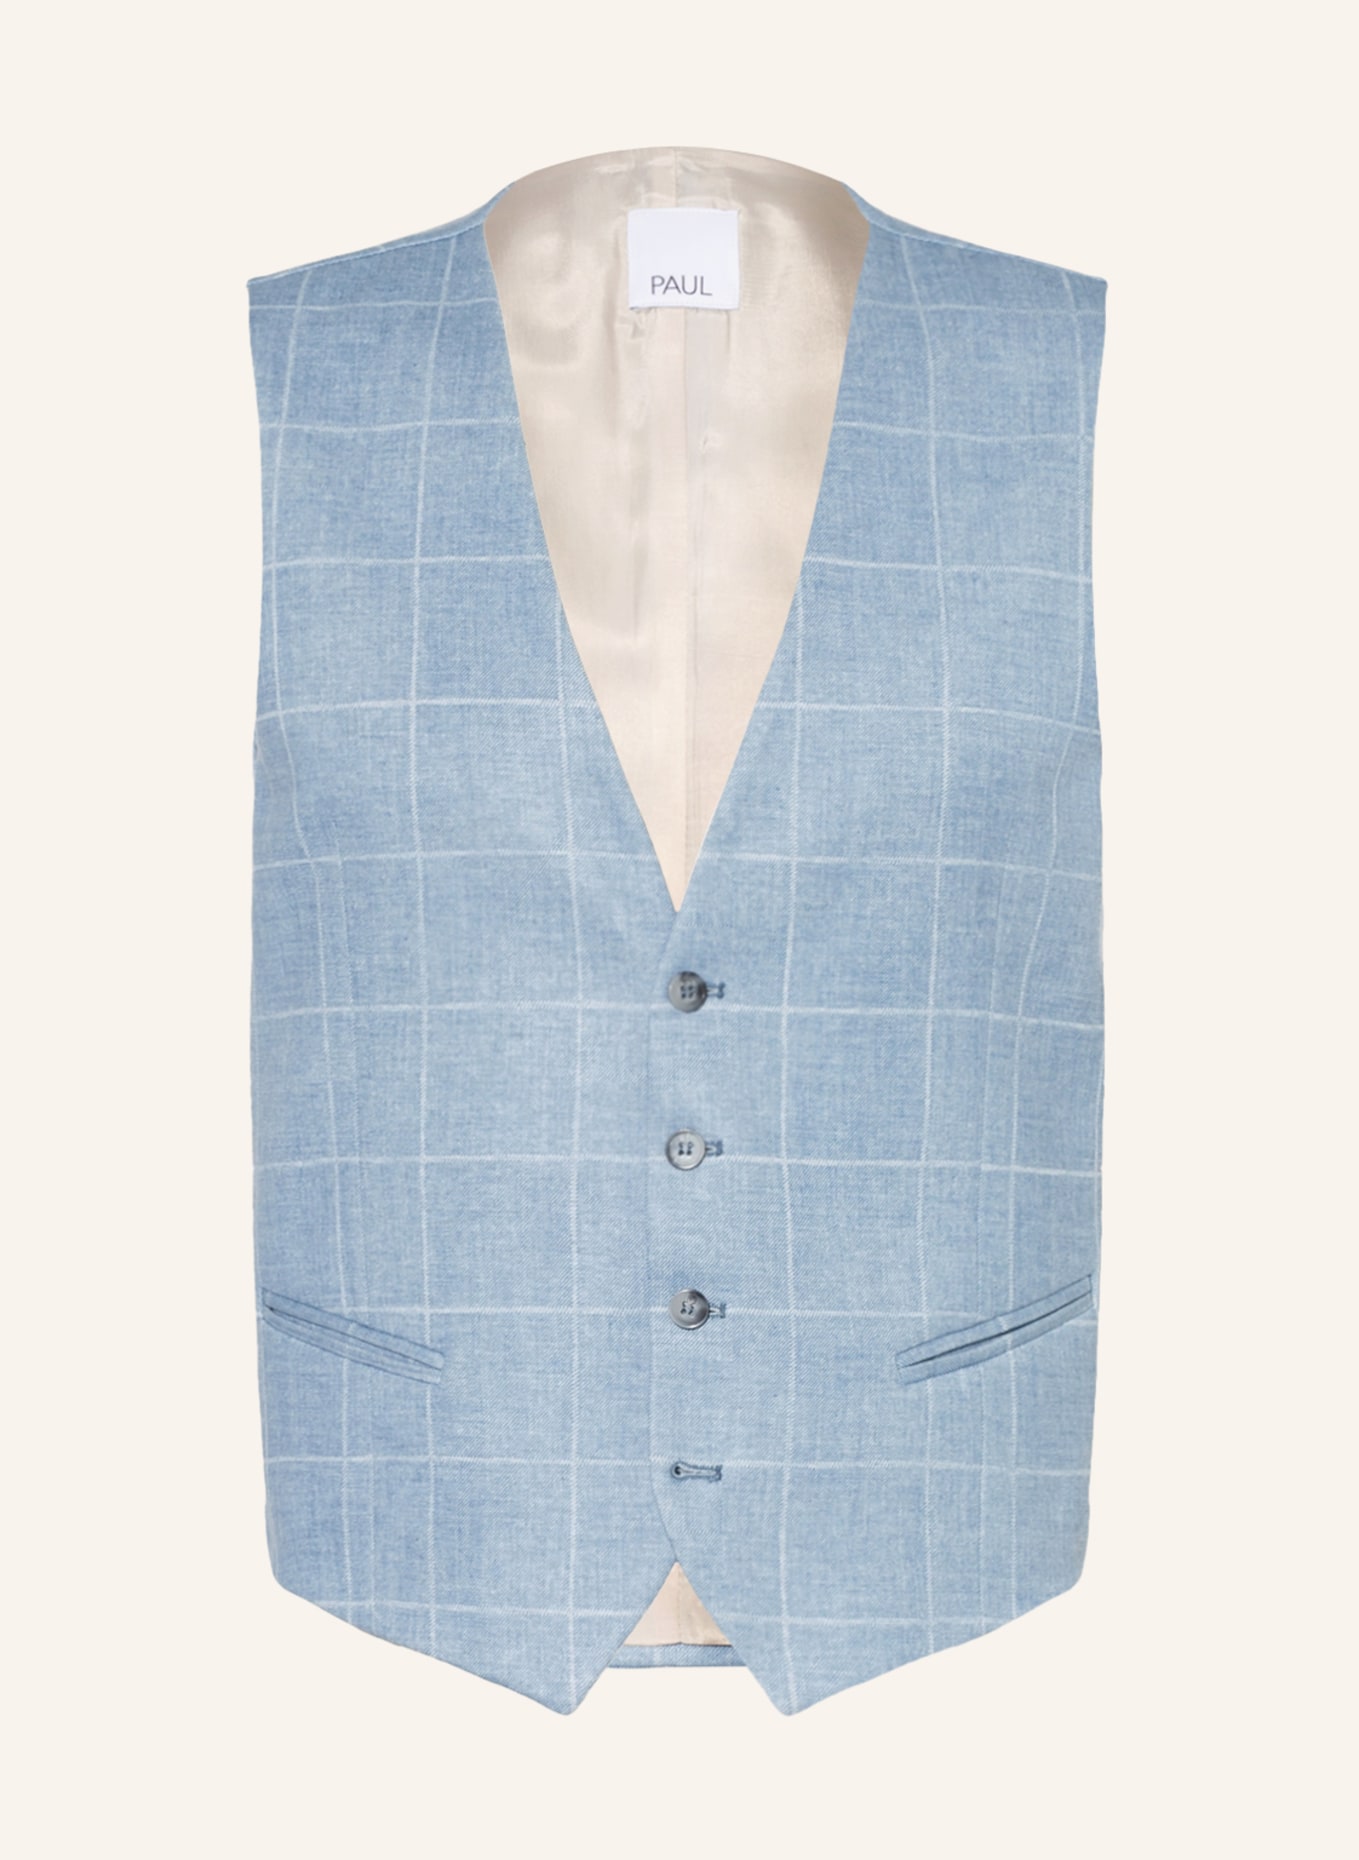 PAUL Suit vest extra slim fit, Color: LIGHT BLUE (Image 1)